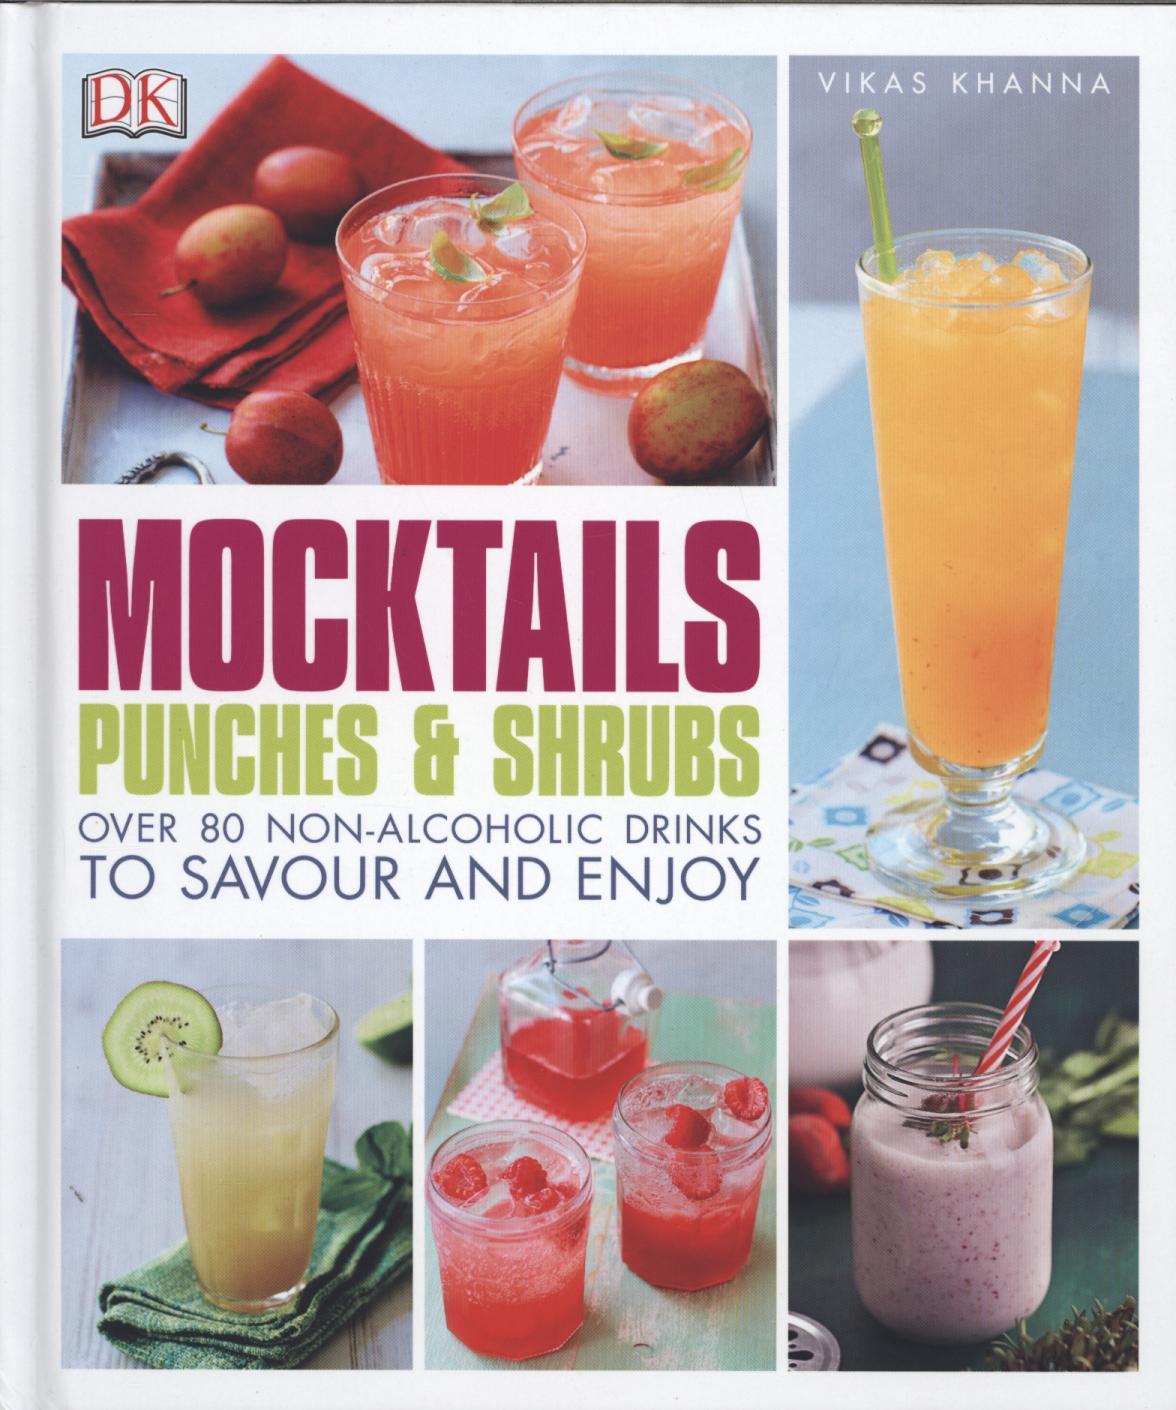 Mocktails, Punches & Shrubs - Vikas Khanna